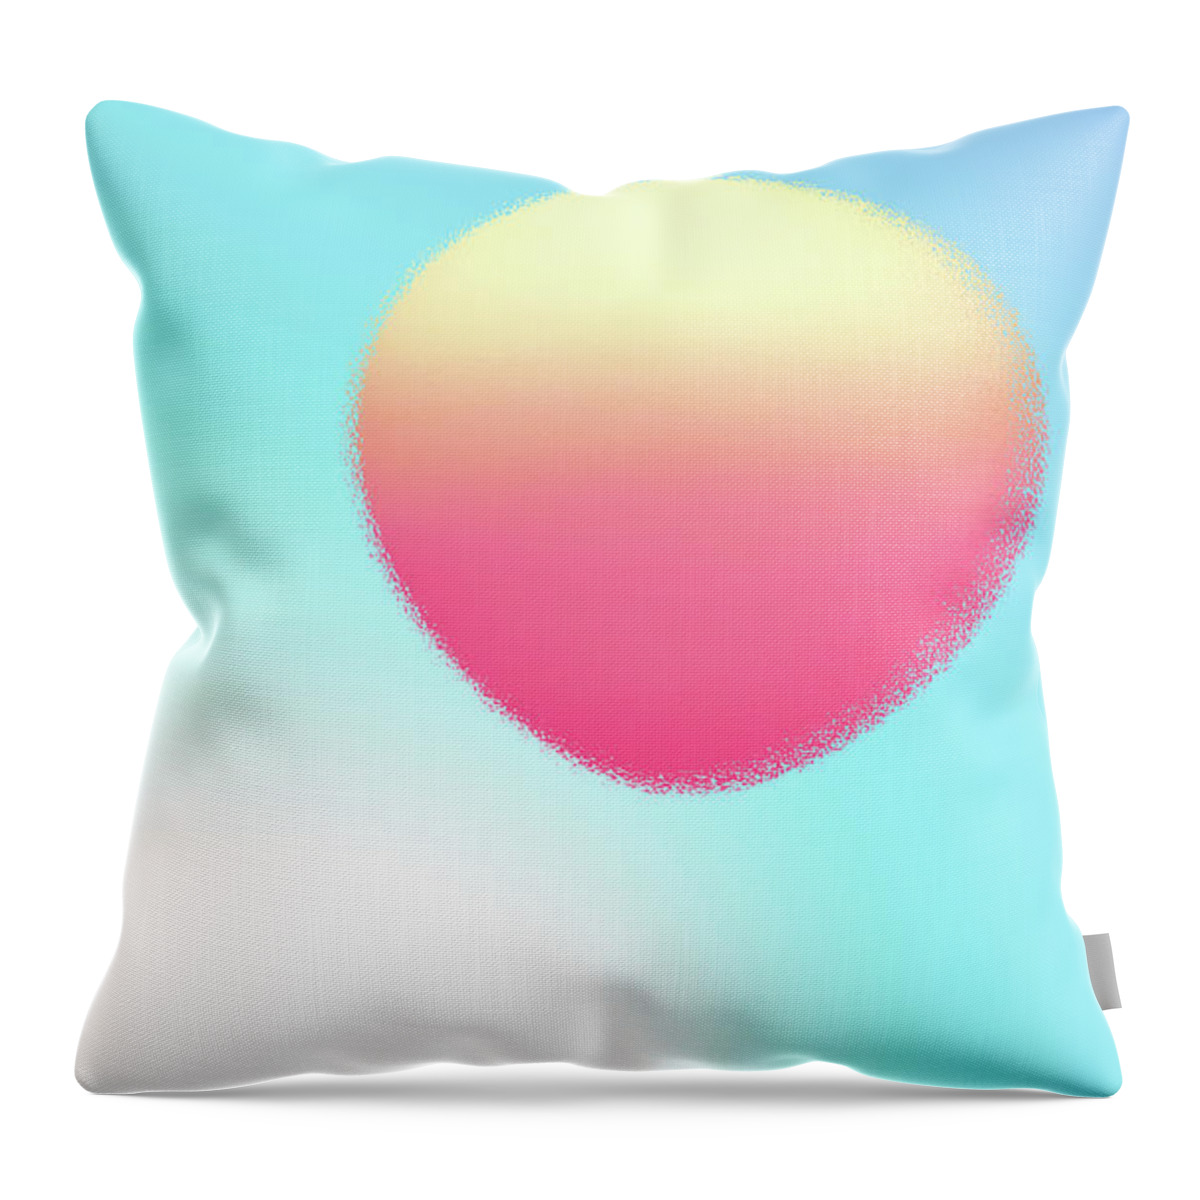 Sun Throw Pillow featuring the digital art Sun Balloon by Kathleen Illes